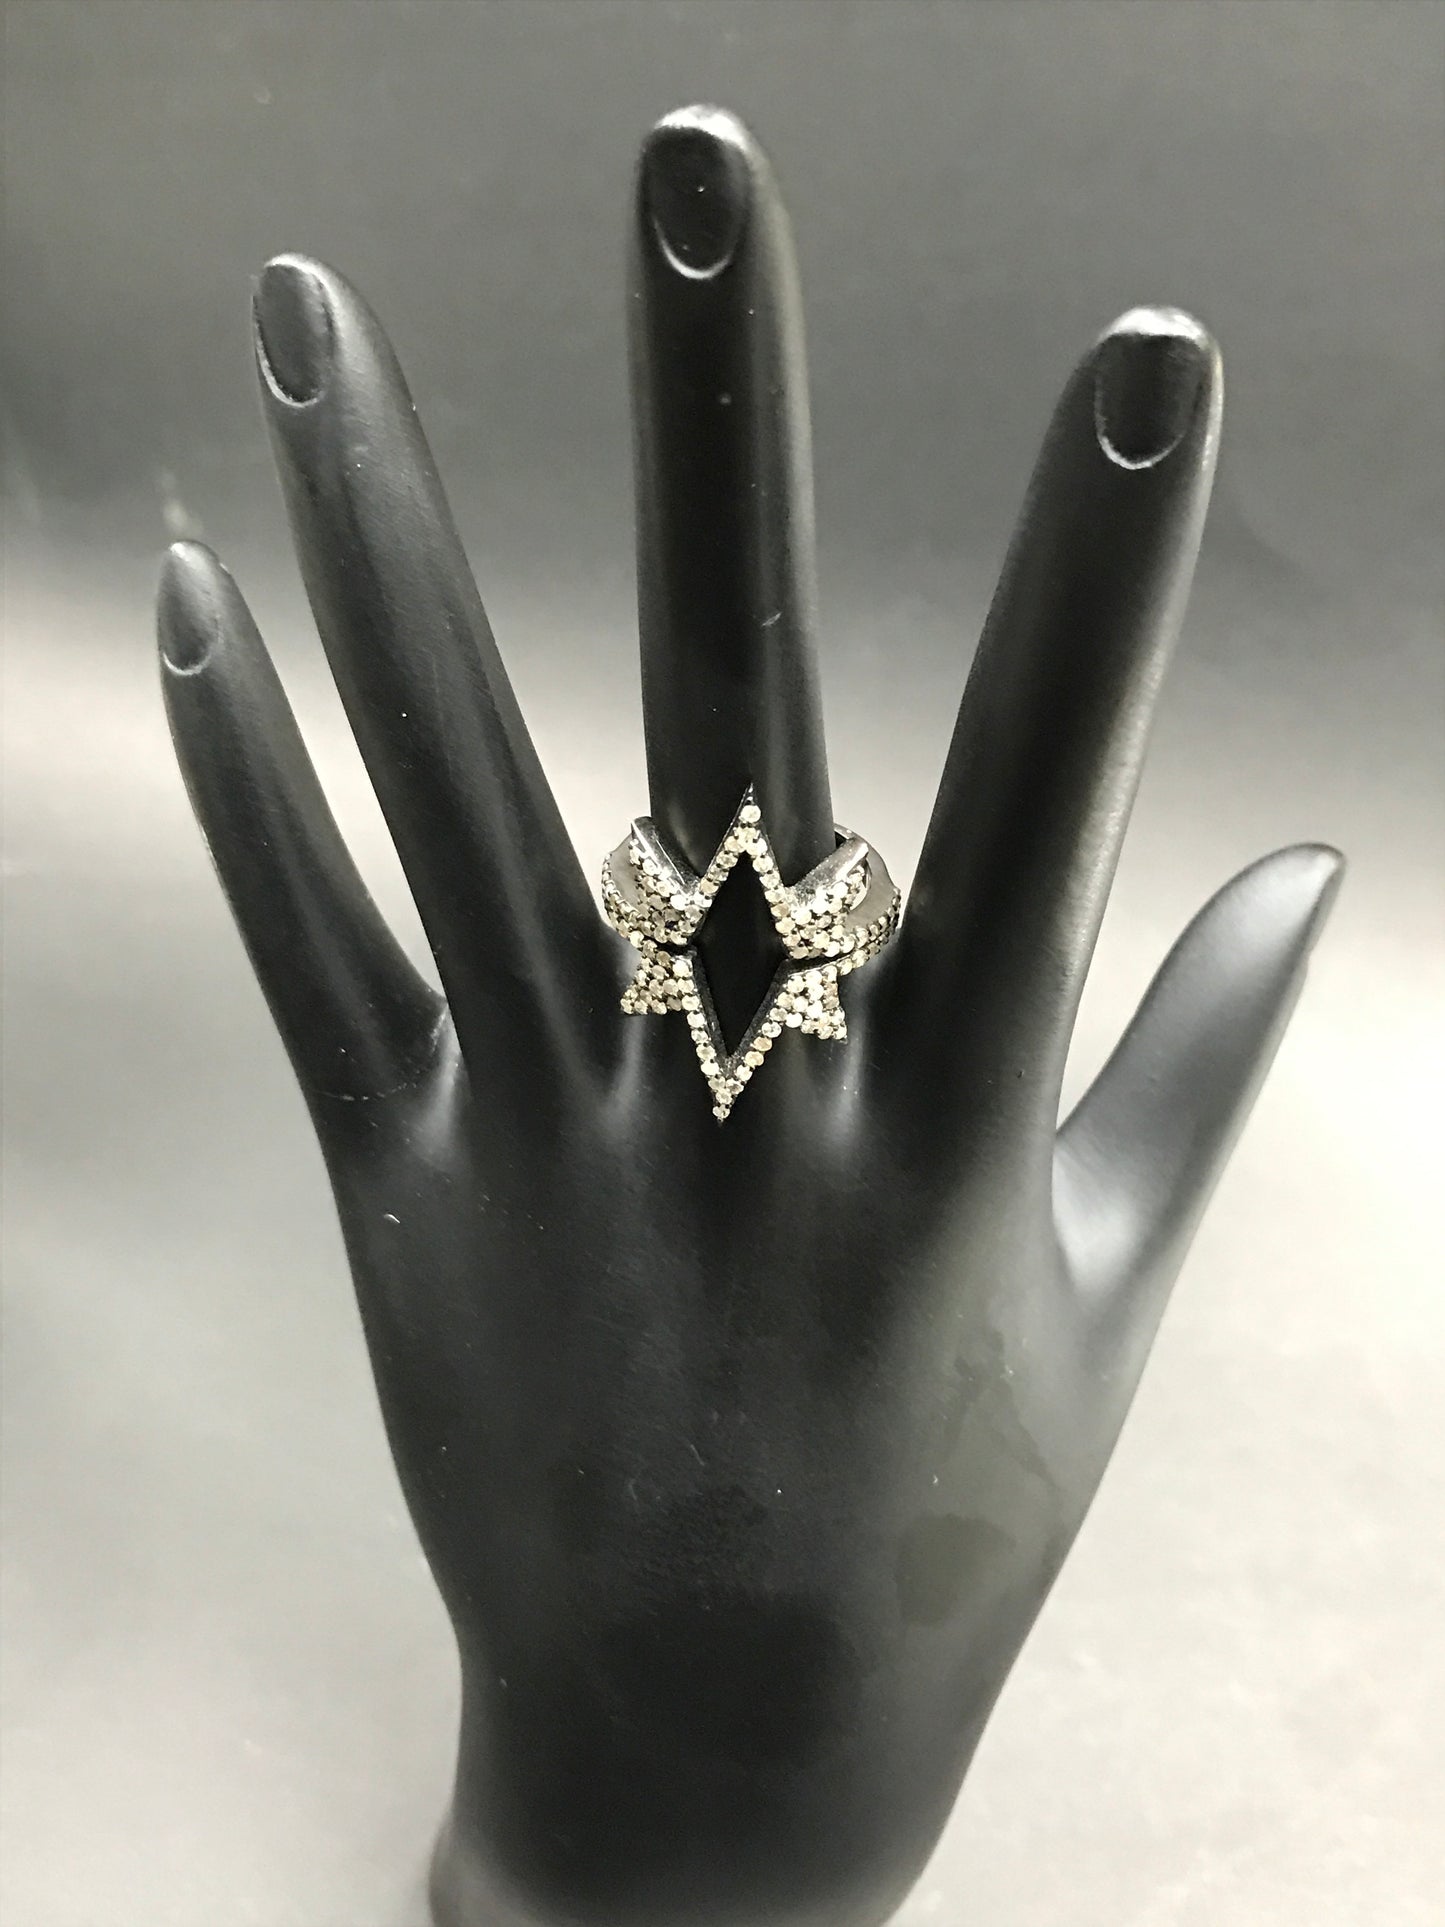 Diamond Double Crown Diamond Ring, Pave Diamond Ring, Pave Double Crown Ring, Approx 26 x 22mm. Sterling Silver